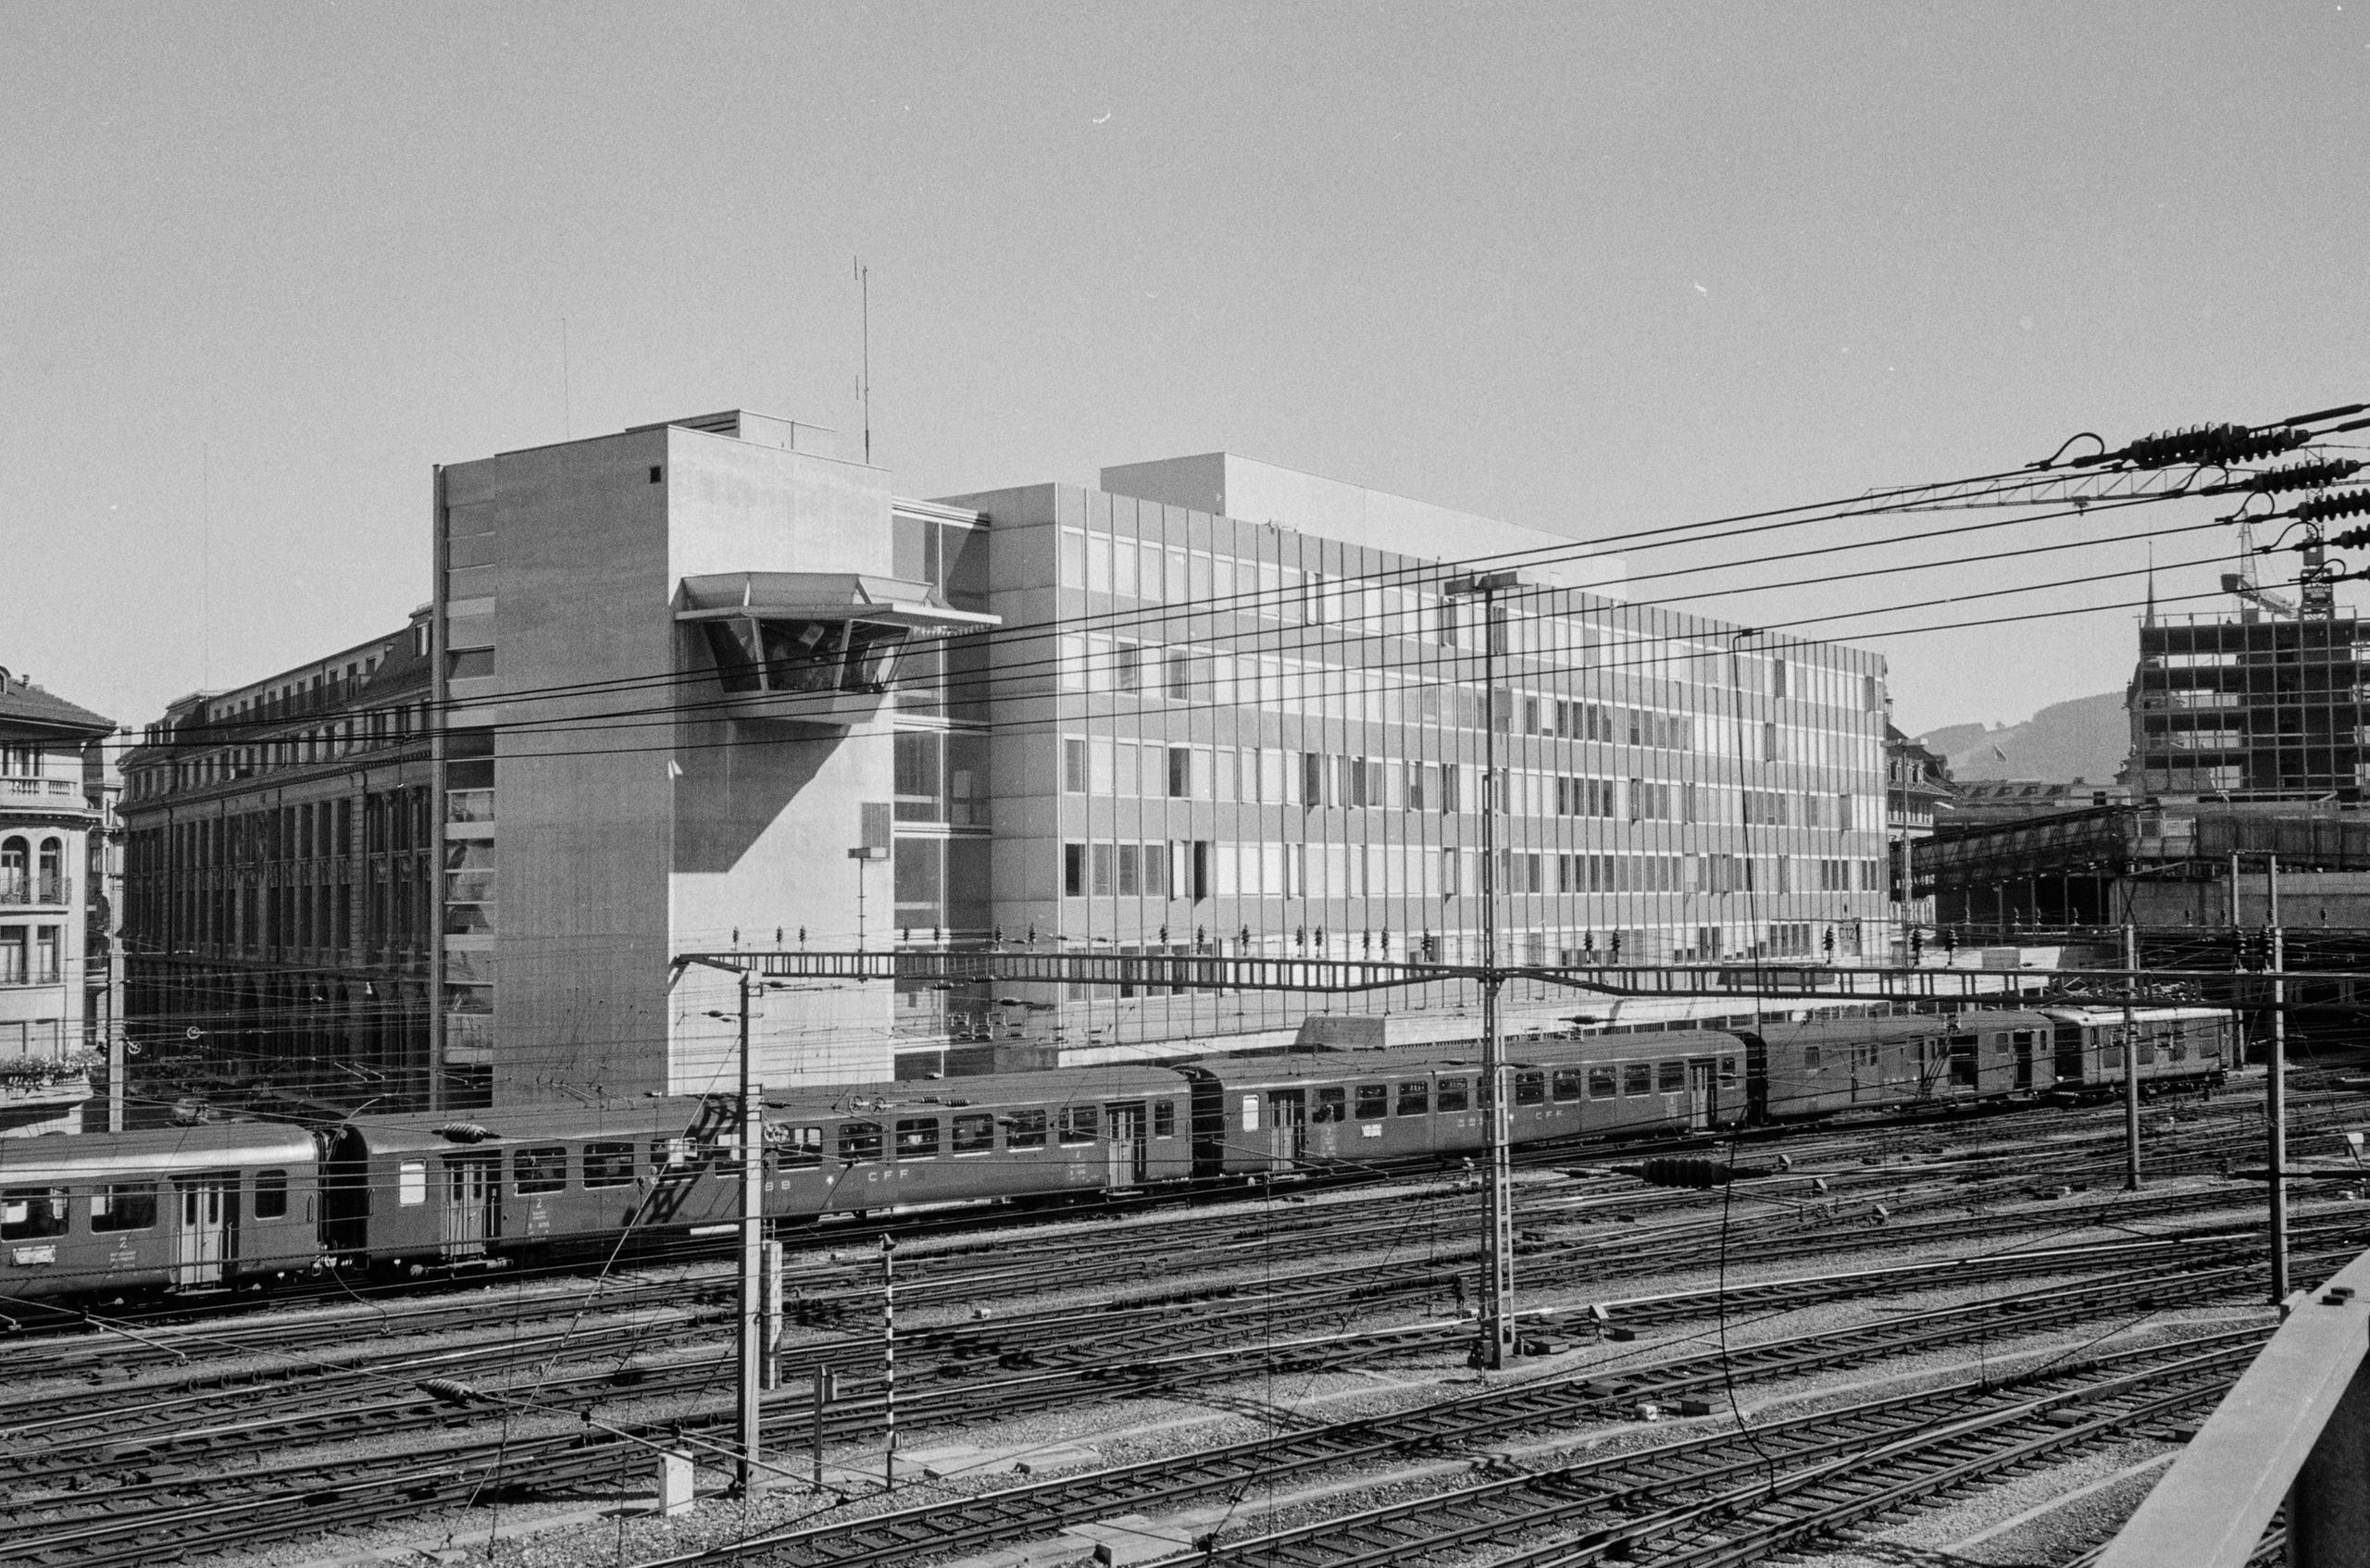 Bahnhof bern